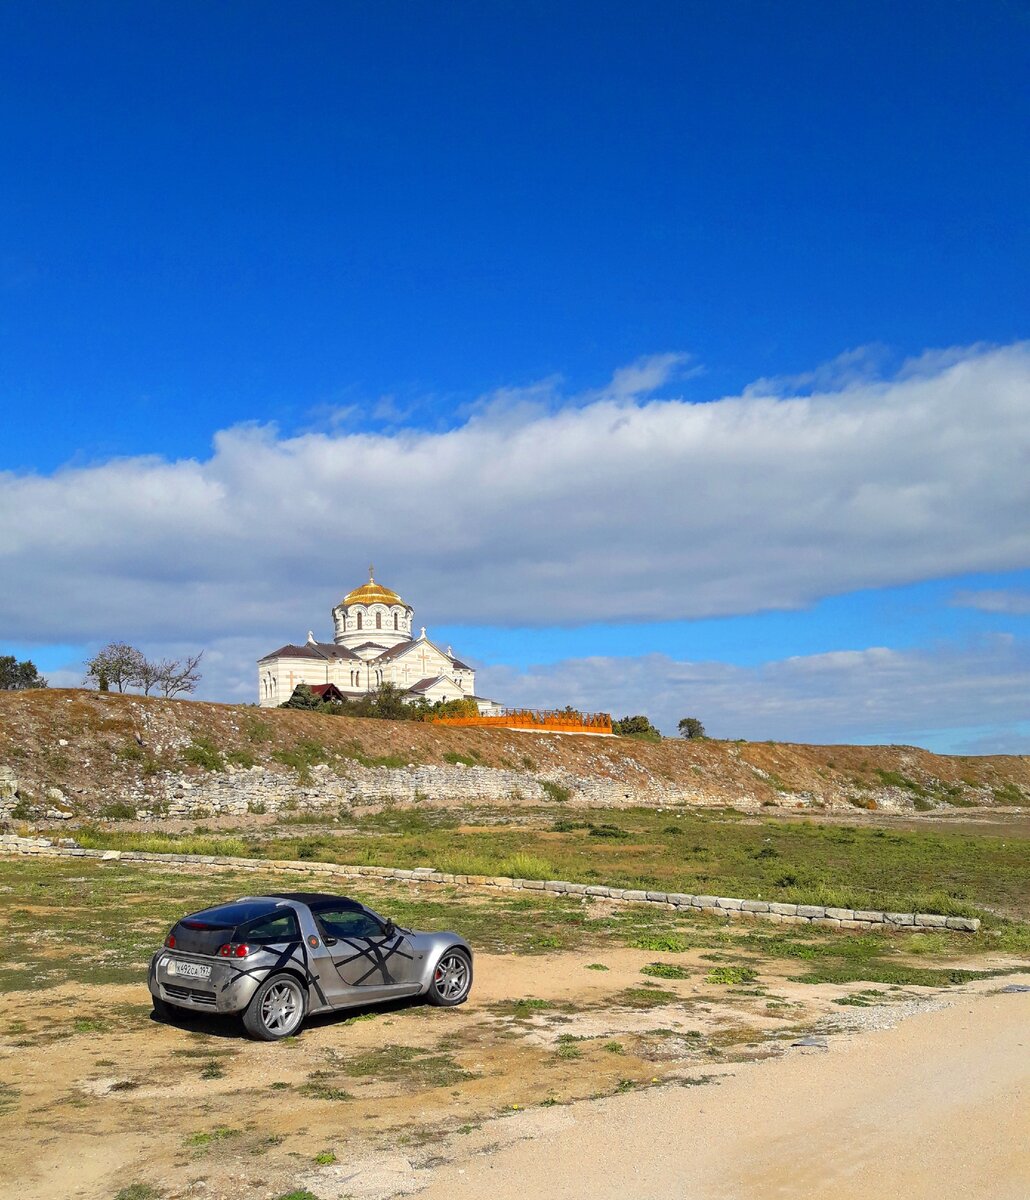 Наша с мужем прогулка по осеннему Херсонесу (Крым), увидели яму для гарума и камень, из которого видно море и небо